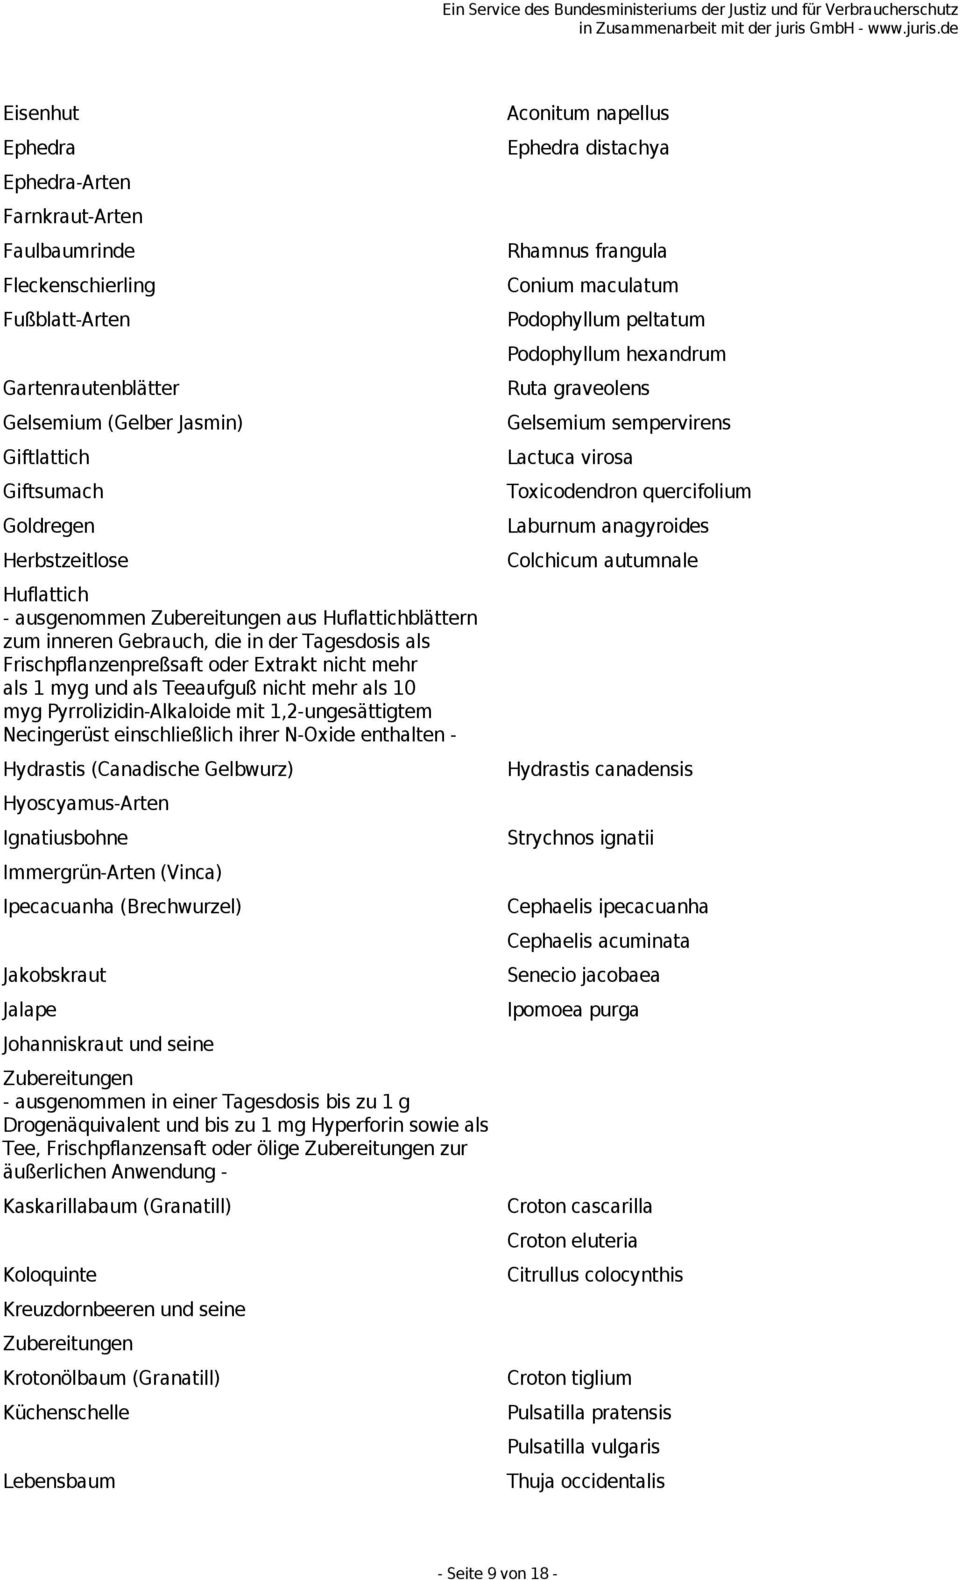 Pyrrolizidin-Alkaloide mit 1,2-ungesättigtem Necingerüst einschließlich ihrer N-Oxide enthalten - Hydrastis (Canadische Gelbwurz) Hyoscyamus-Arten Ignatiusbohne Immergrün-Arten (Vinca) Ipecacuanha